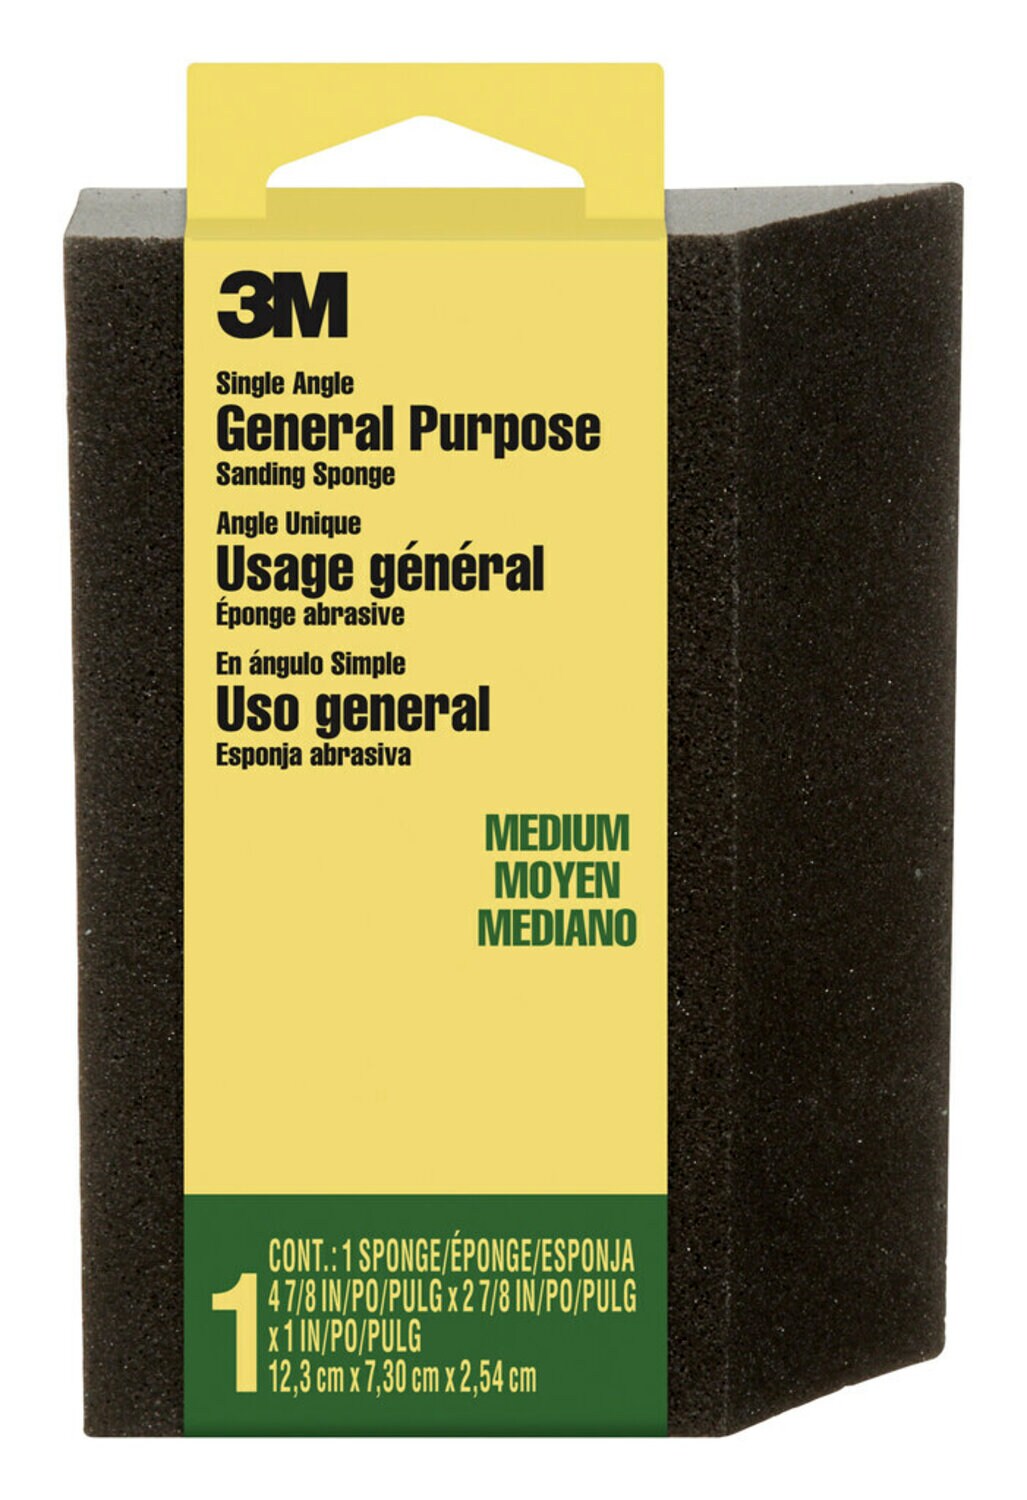 7100101551 - 3M General Purpose Sanding Sponge CP-041-ESF, Single Angle, 2 7/8 in x 4 7/8 in x 1 in, Medium, 1/pk, 24 pks/cs